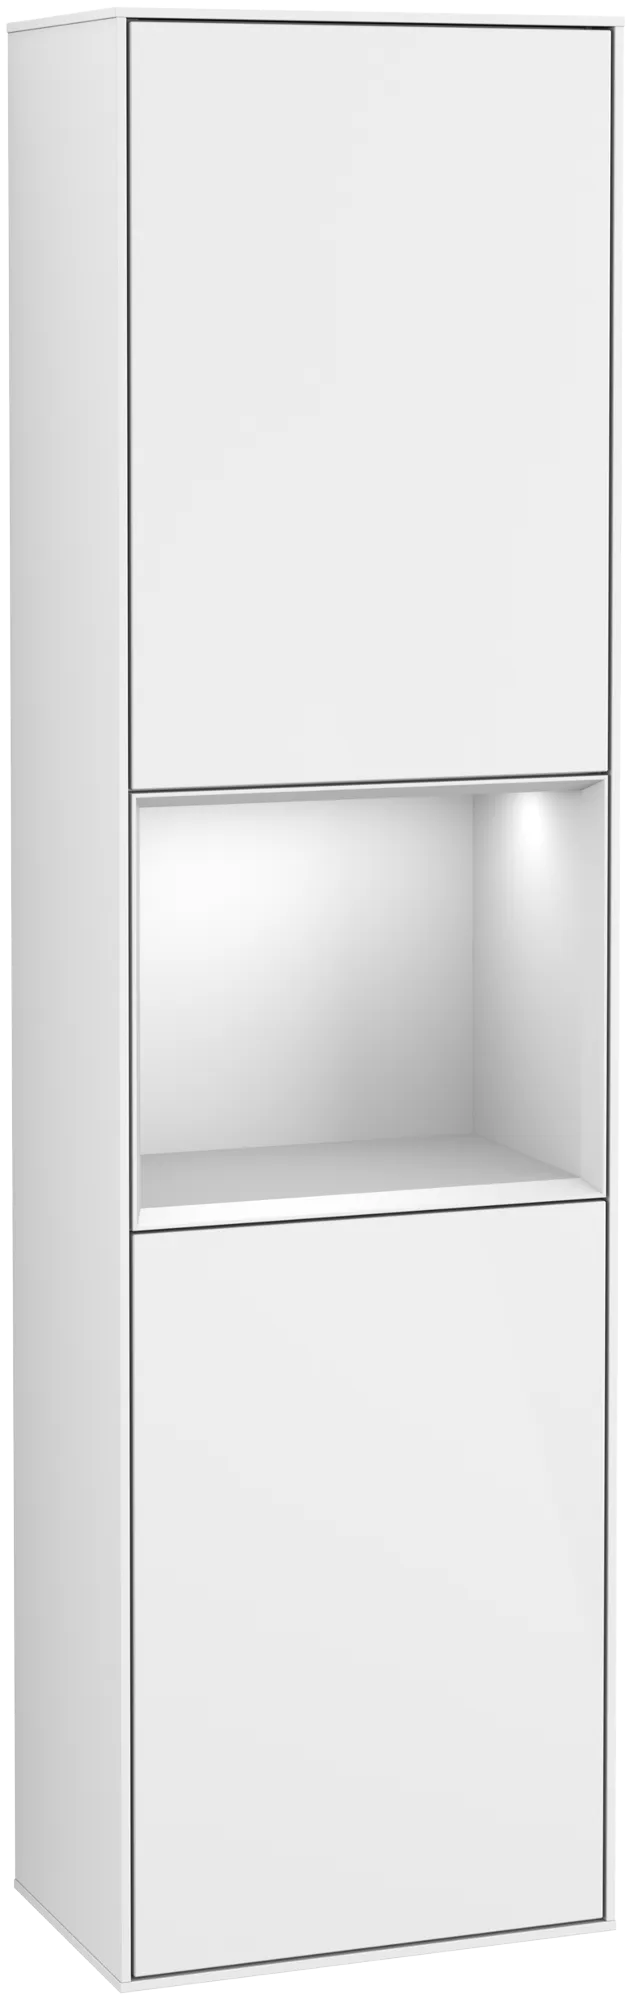 Bild von VILLEROY BOCH Finion Hochschrank, mit Beleuchtung, 2 Türen, 418 x 1516 x 270 mm, Glossy White Lacquer / White Matt Lacquer #G470MTGF